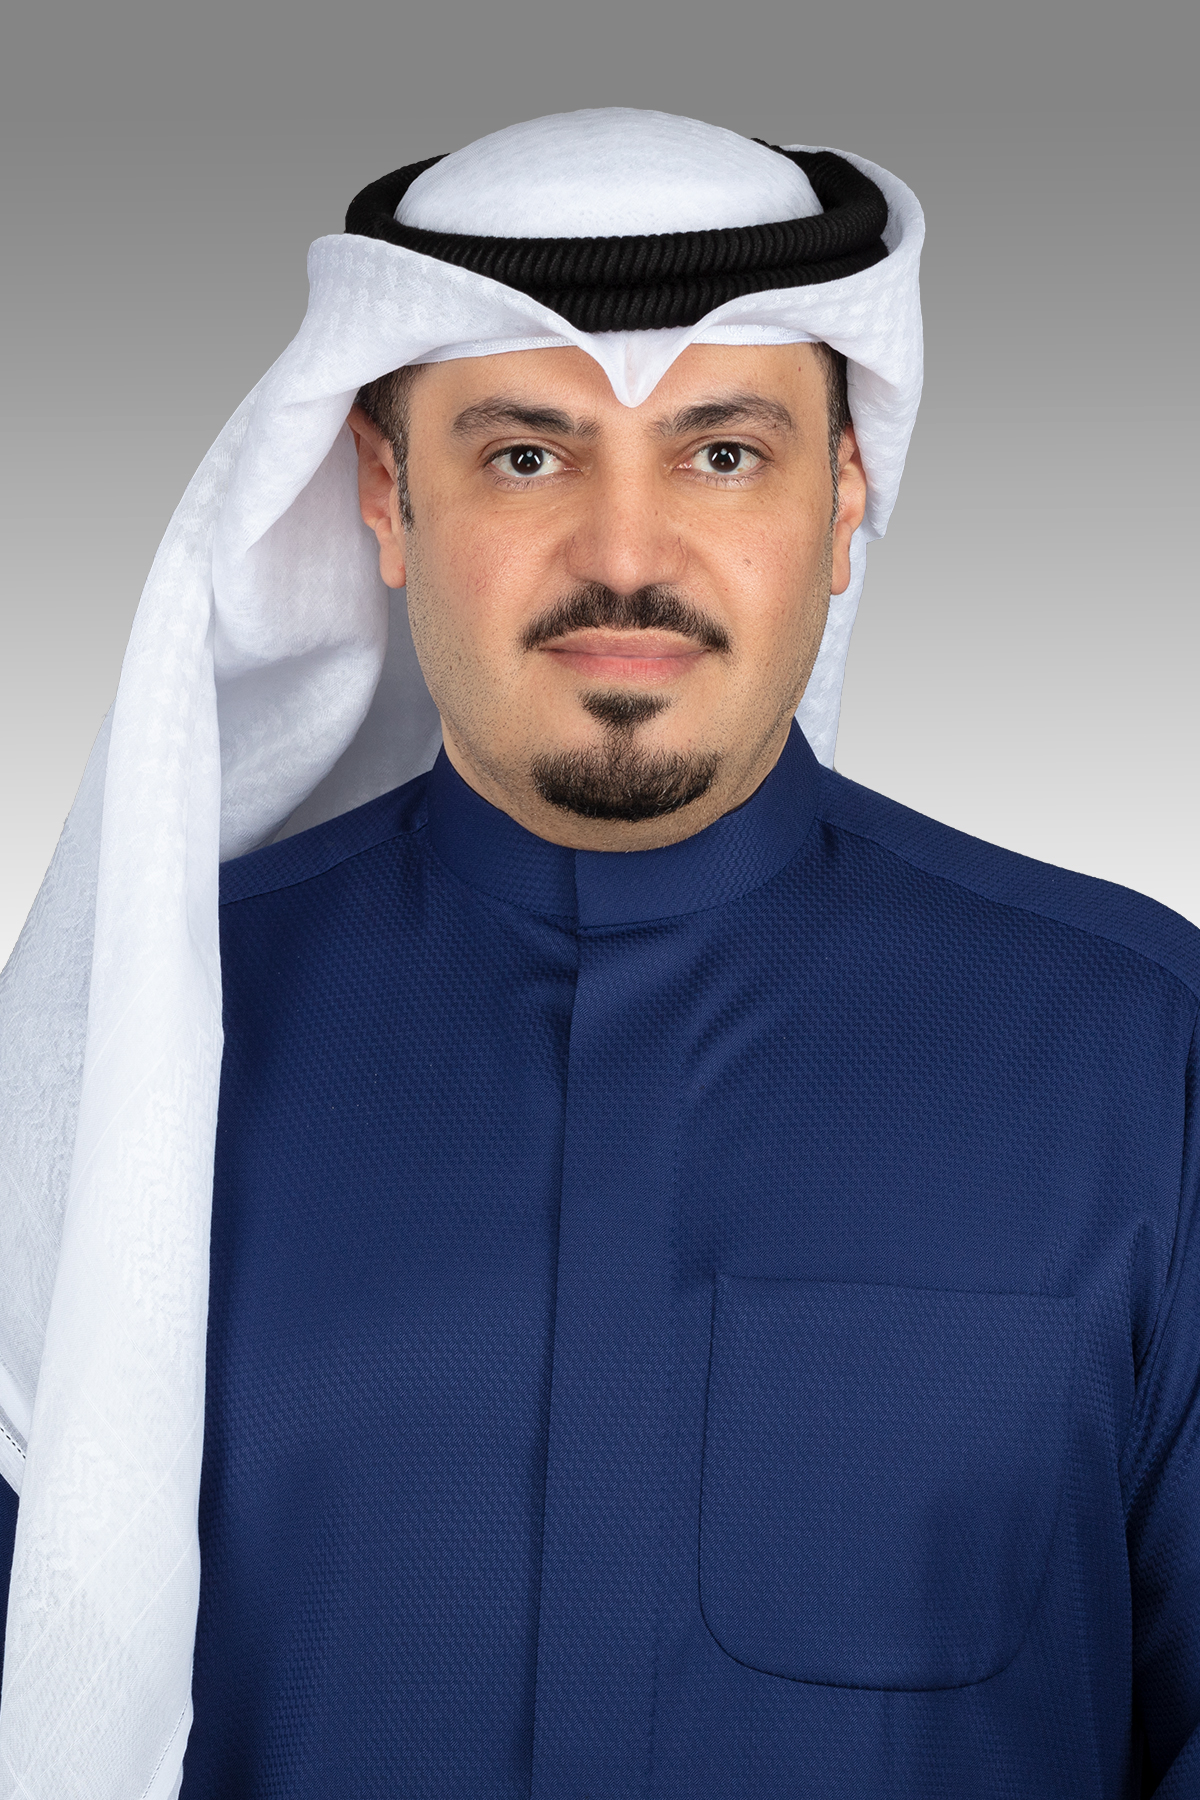 هشام الصالح يقترح إقرار مزايا مالية إضافية للأطباء الكويتيين